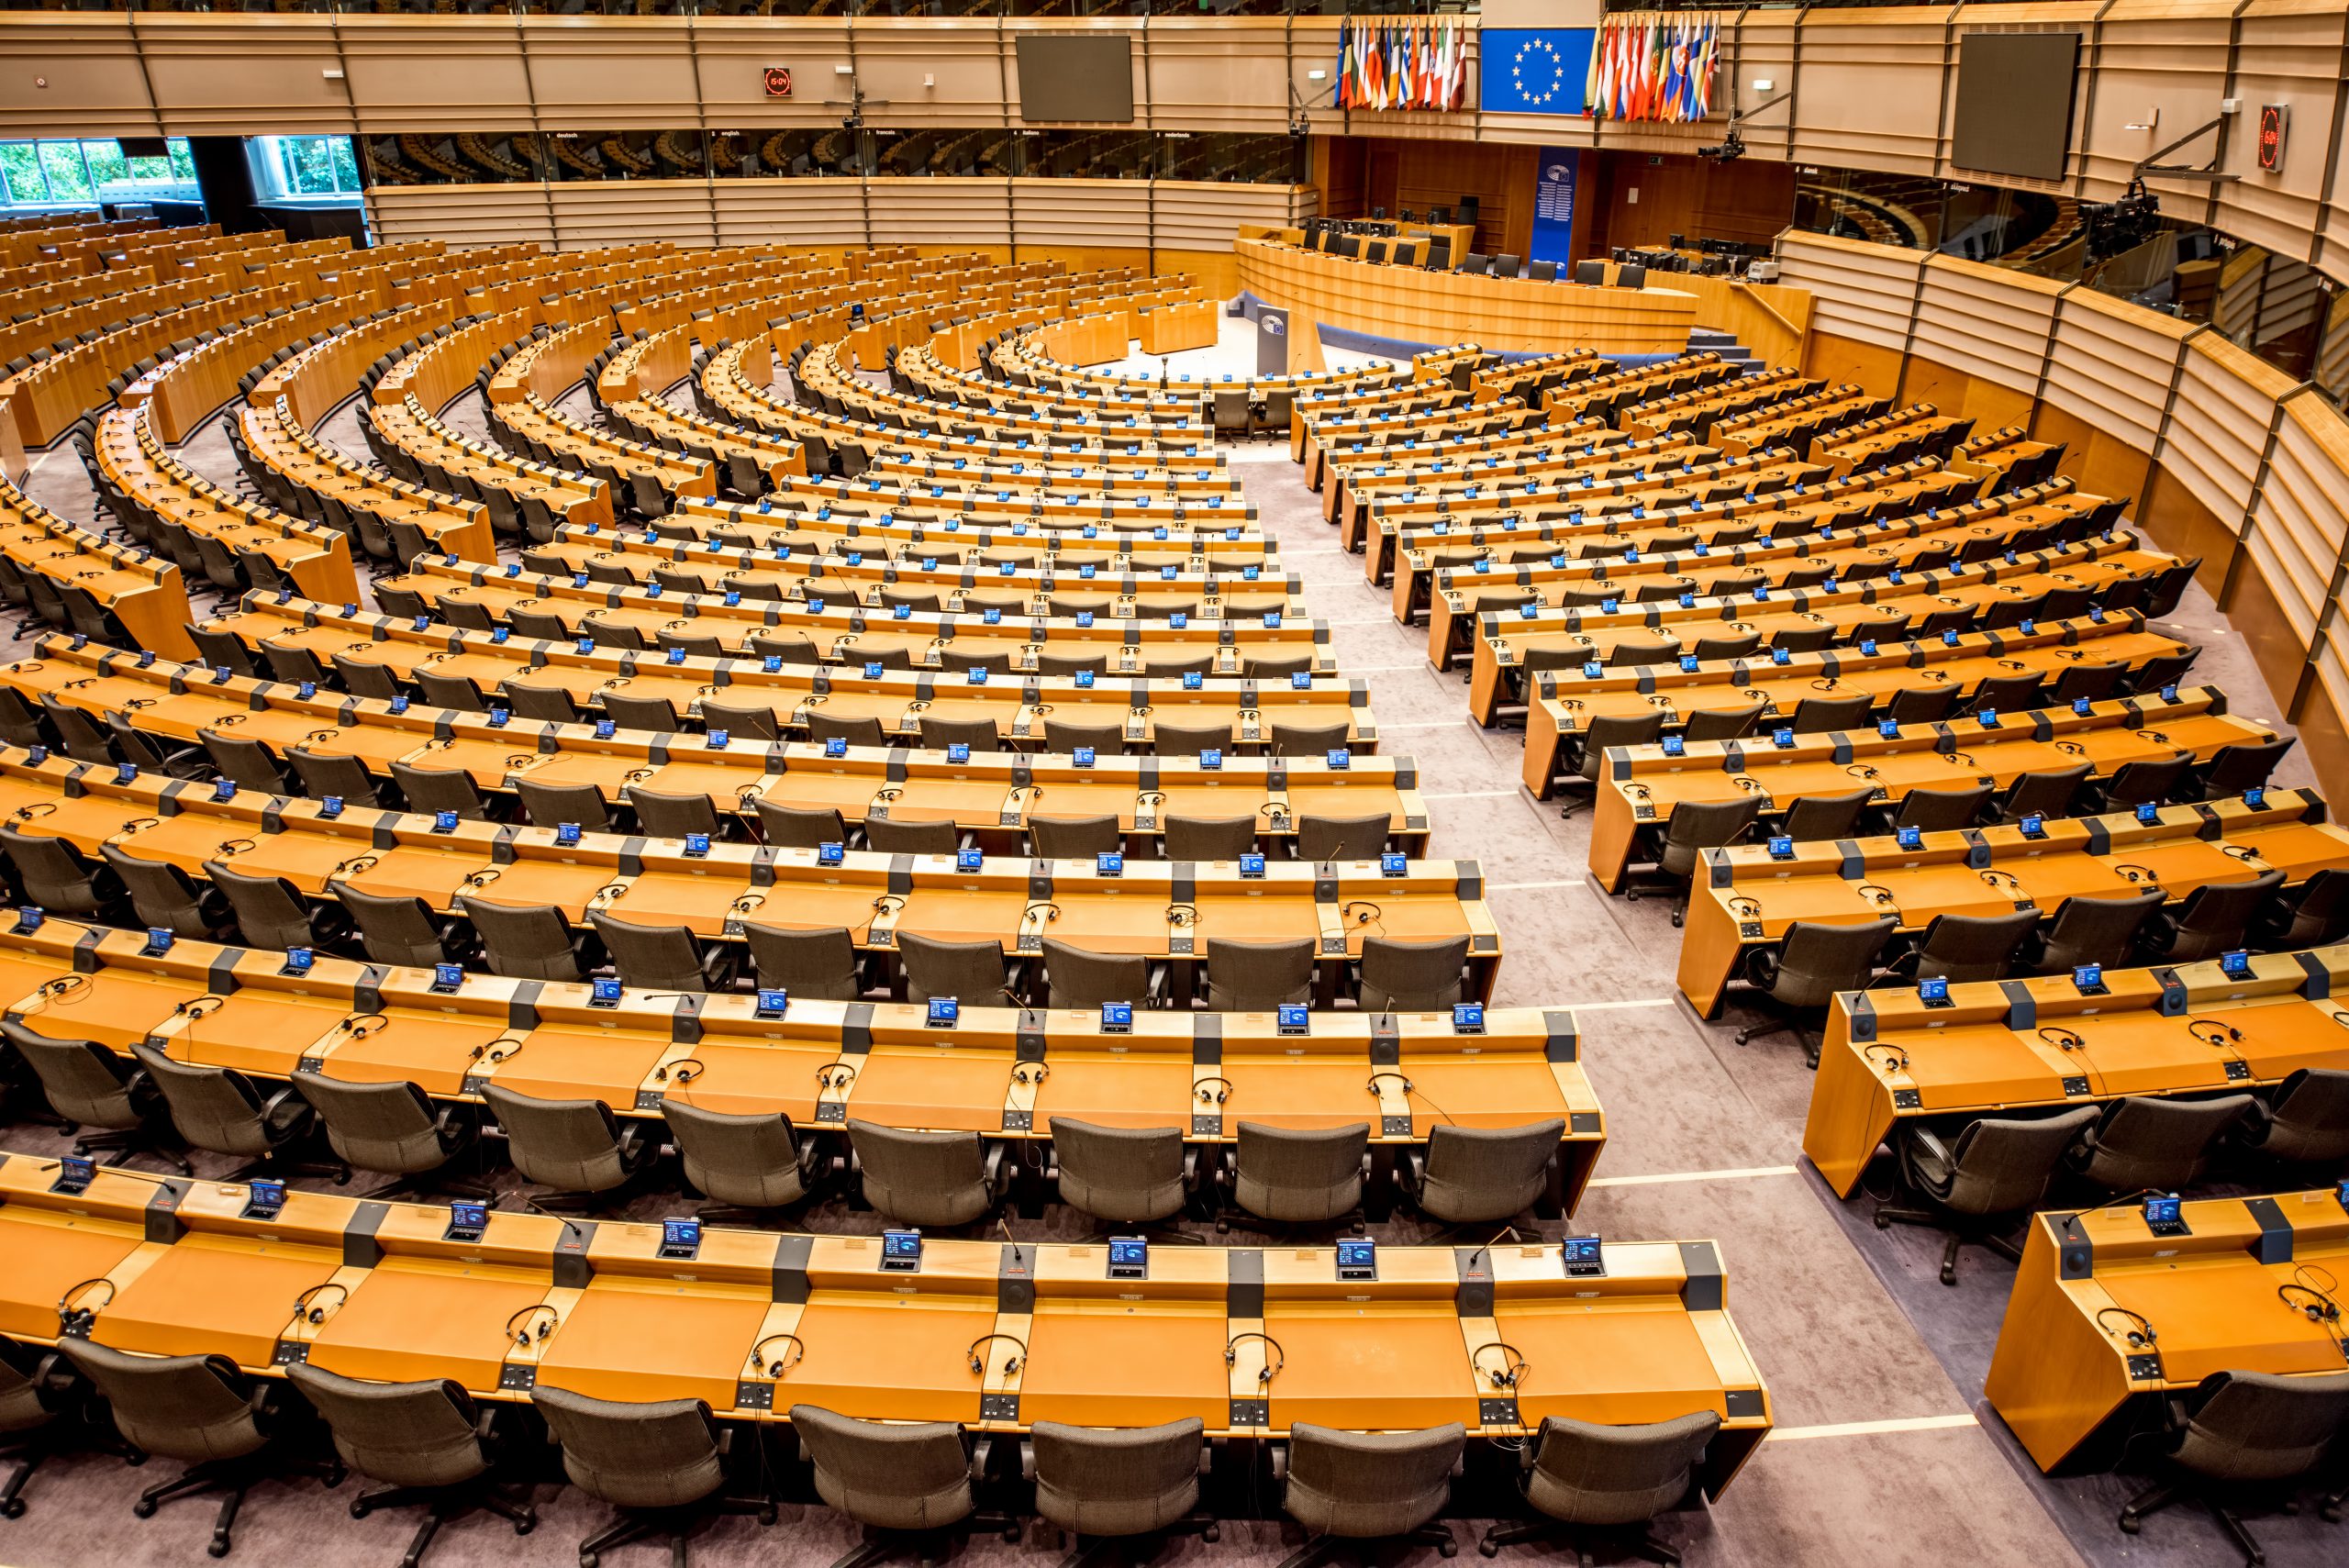 European parliament interior